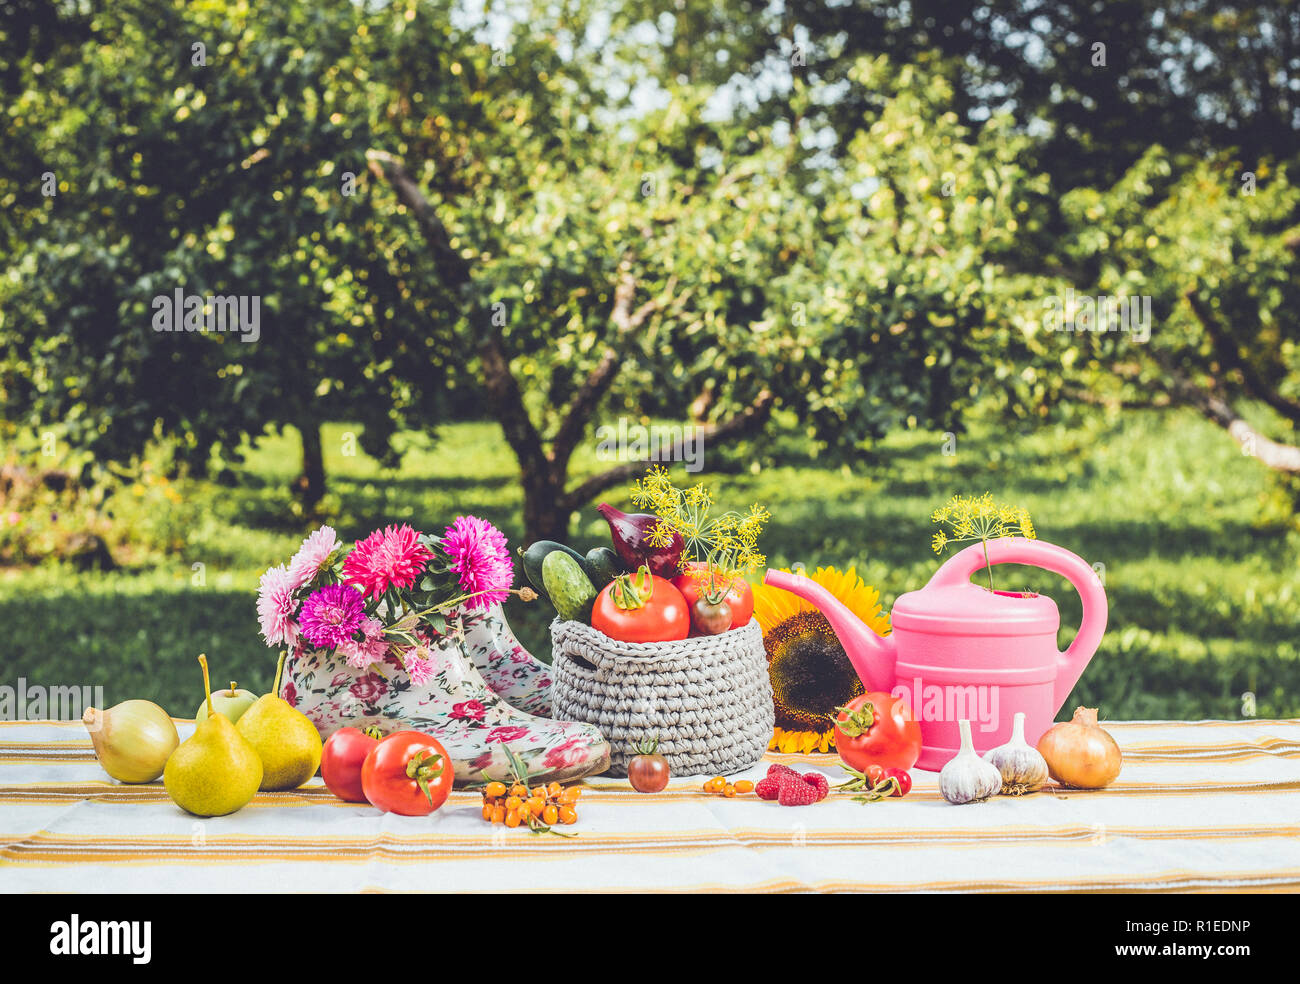 Saisonale Gartenarbeit eingestellt Hintergrund mit verschiedenen Herbst Obst, Gemüse Gärtner Tools, pink Gießkanne, weiß rosa blumenmuster Knöchel wellies, im Freien Stockfoto